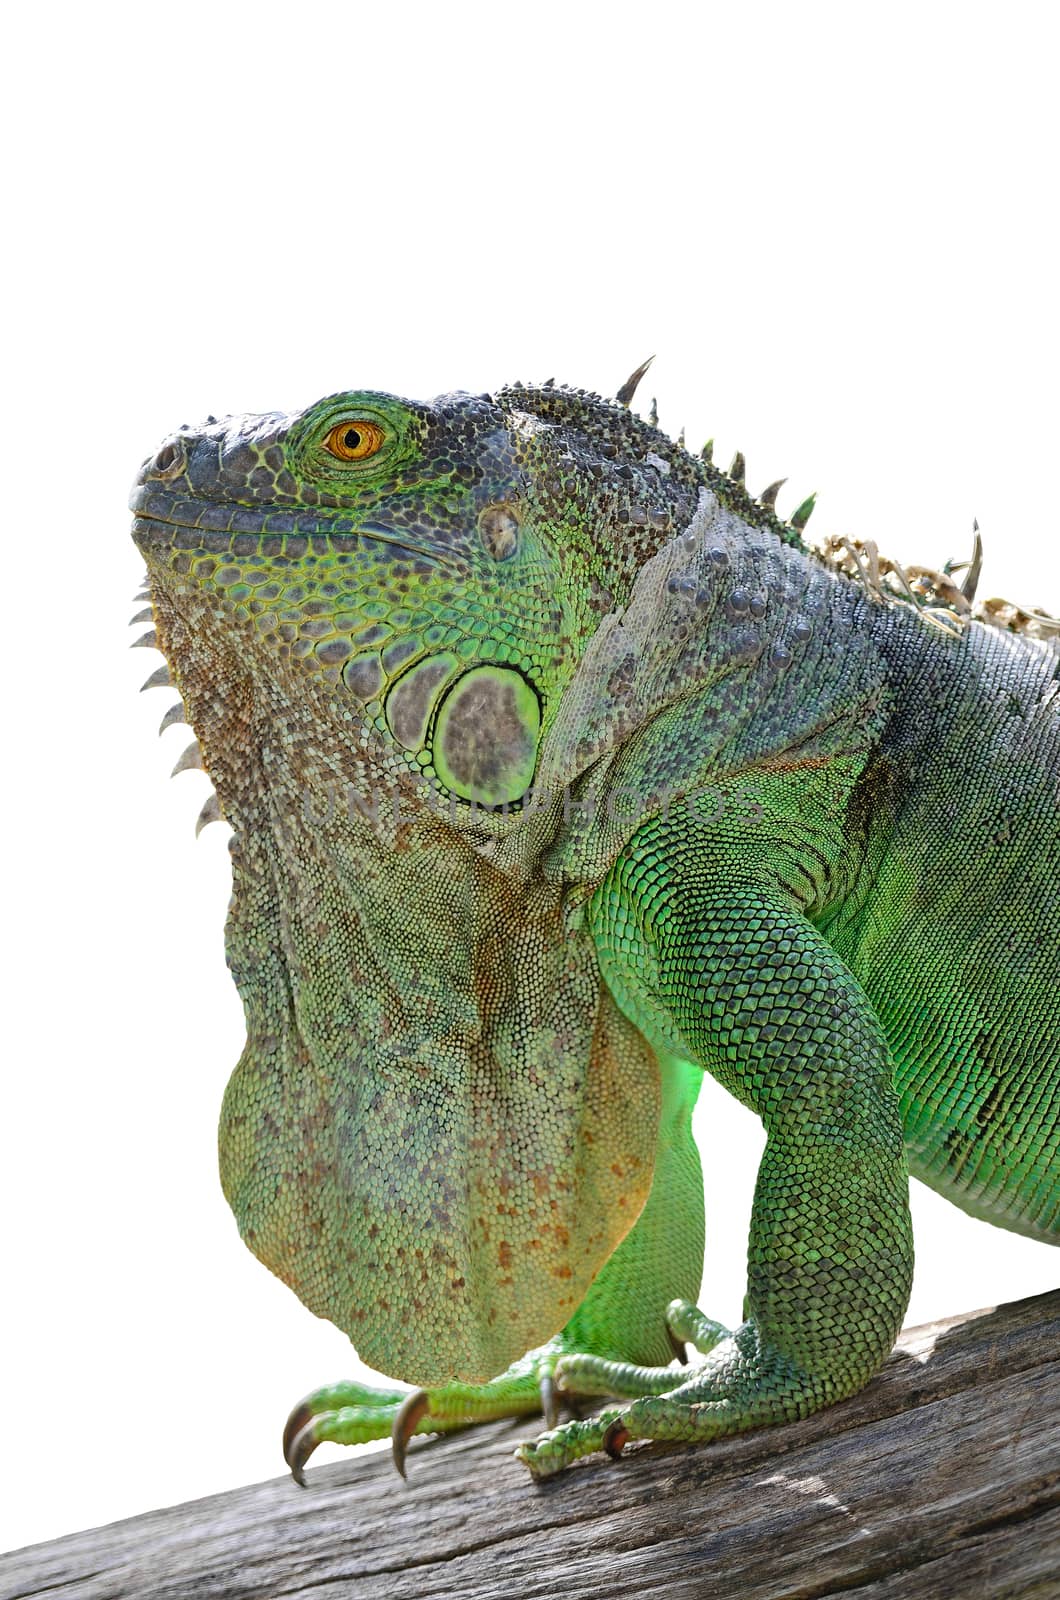 Female Green Iguana (Iguana iguana), standing on tree branch on white background